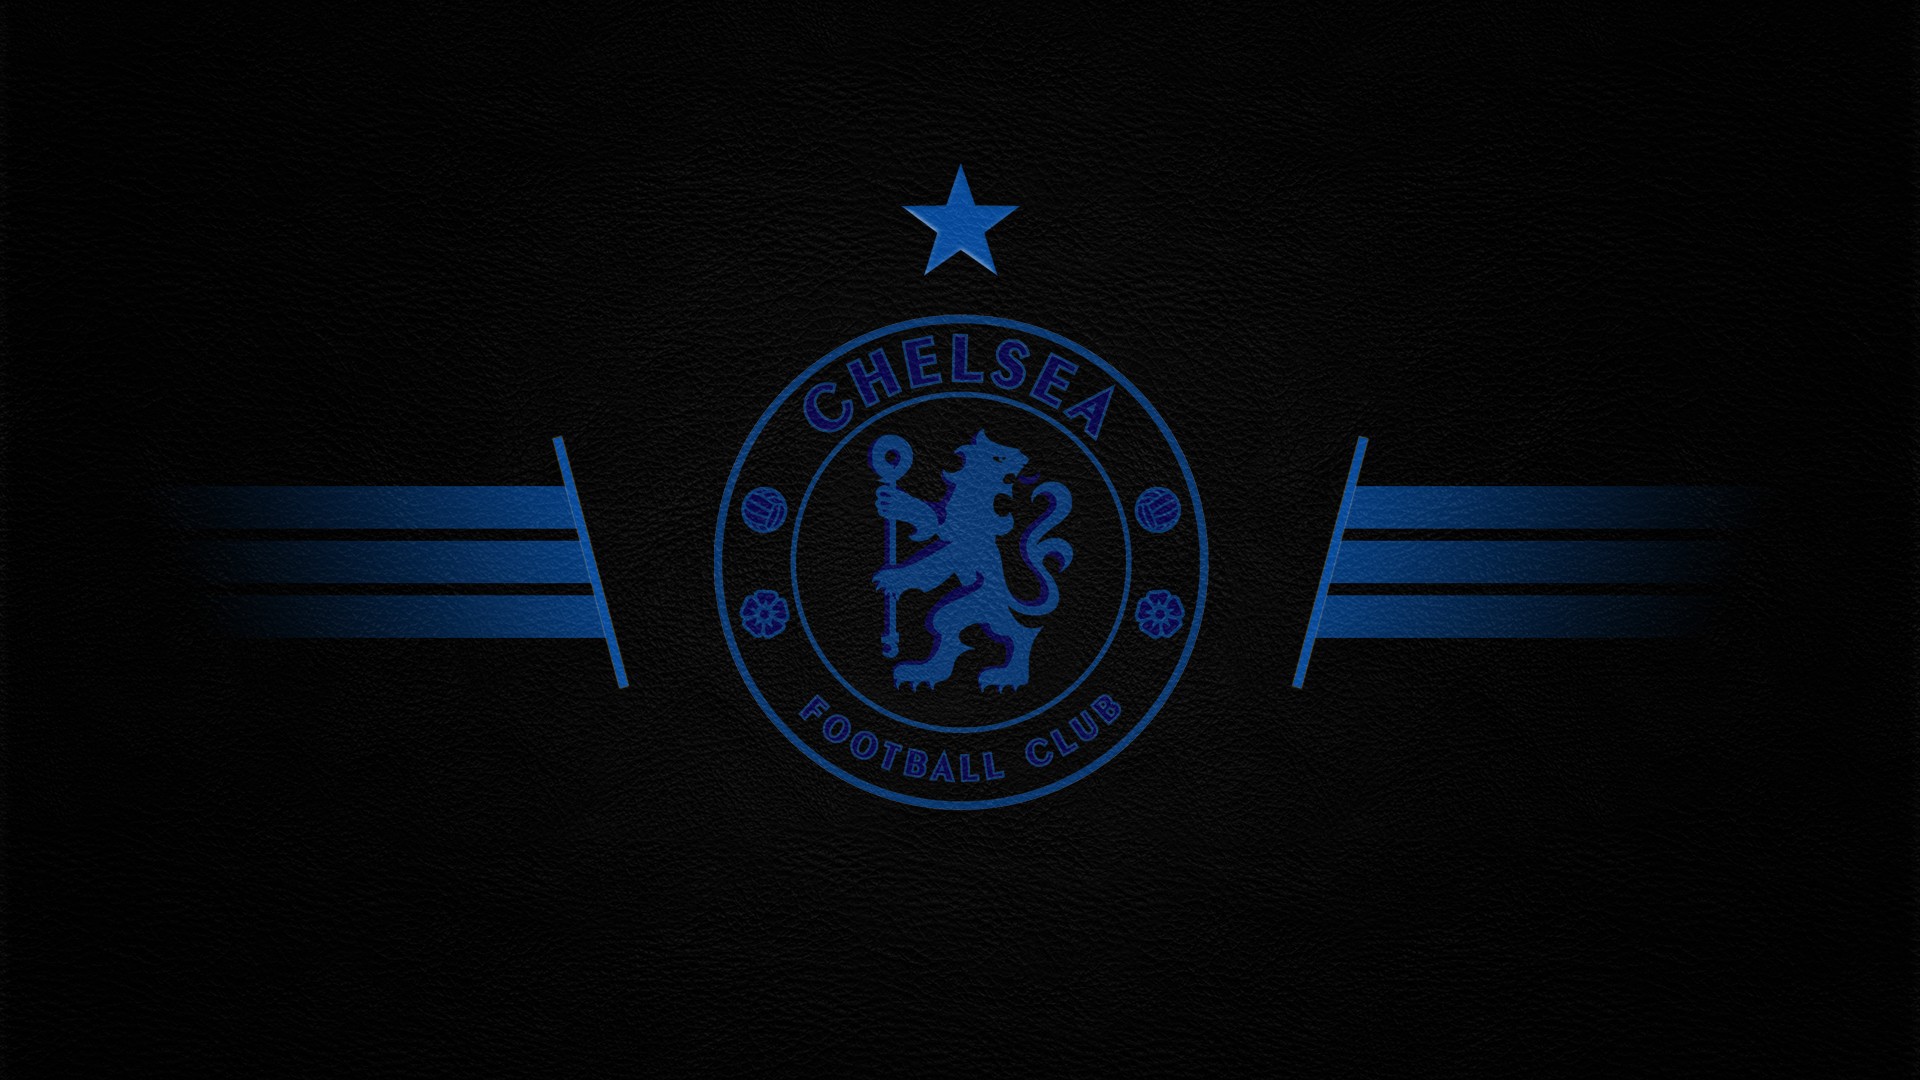 Zastaki.com - Футбольный клуб Челси, логотип  голубой на сером